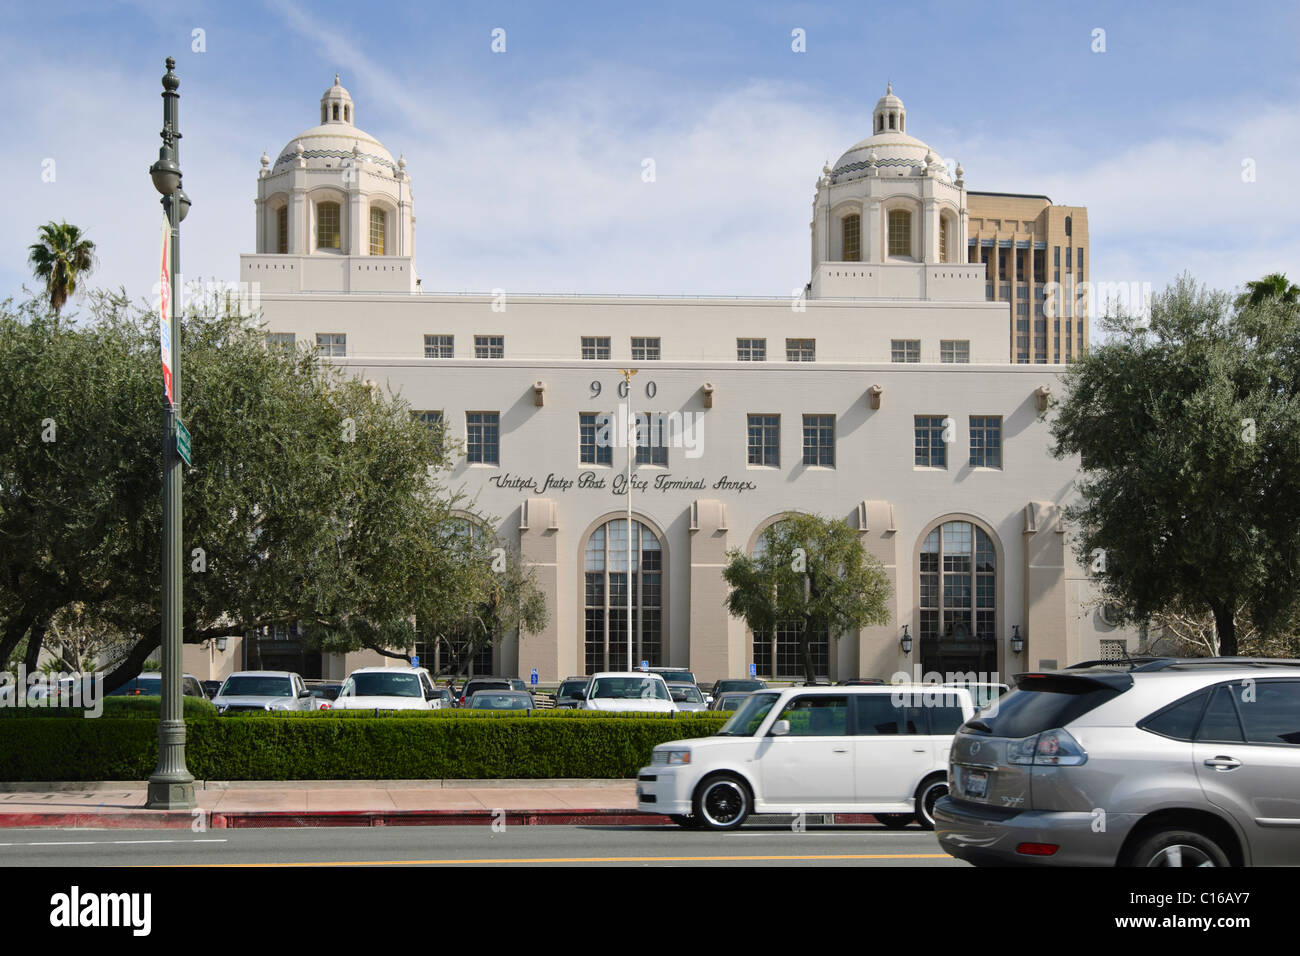 United States Post Office Terminal de Los Angeles l'annexe. Banque D'Images